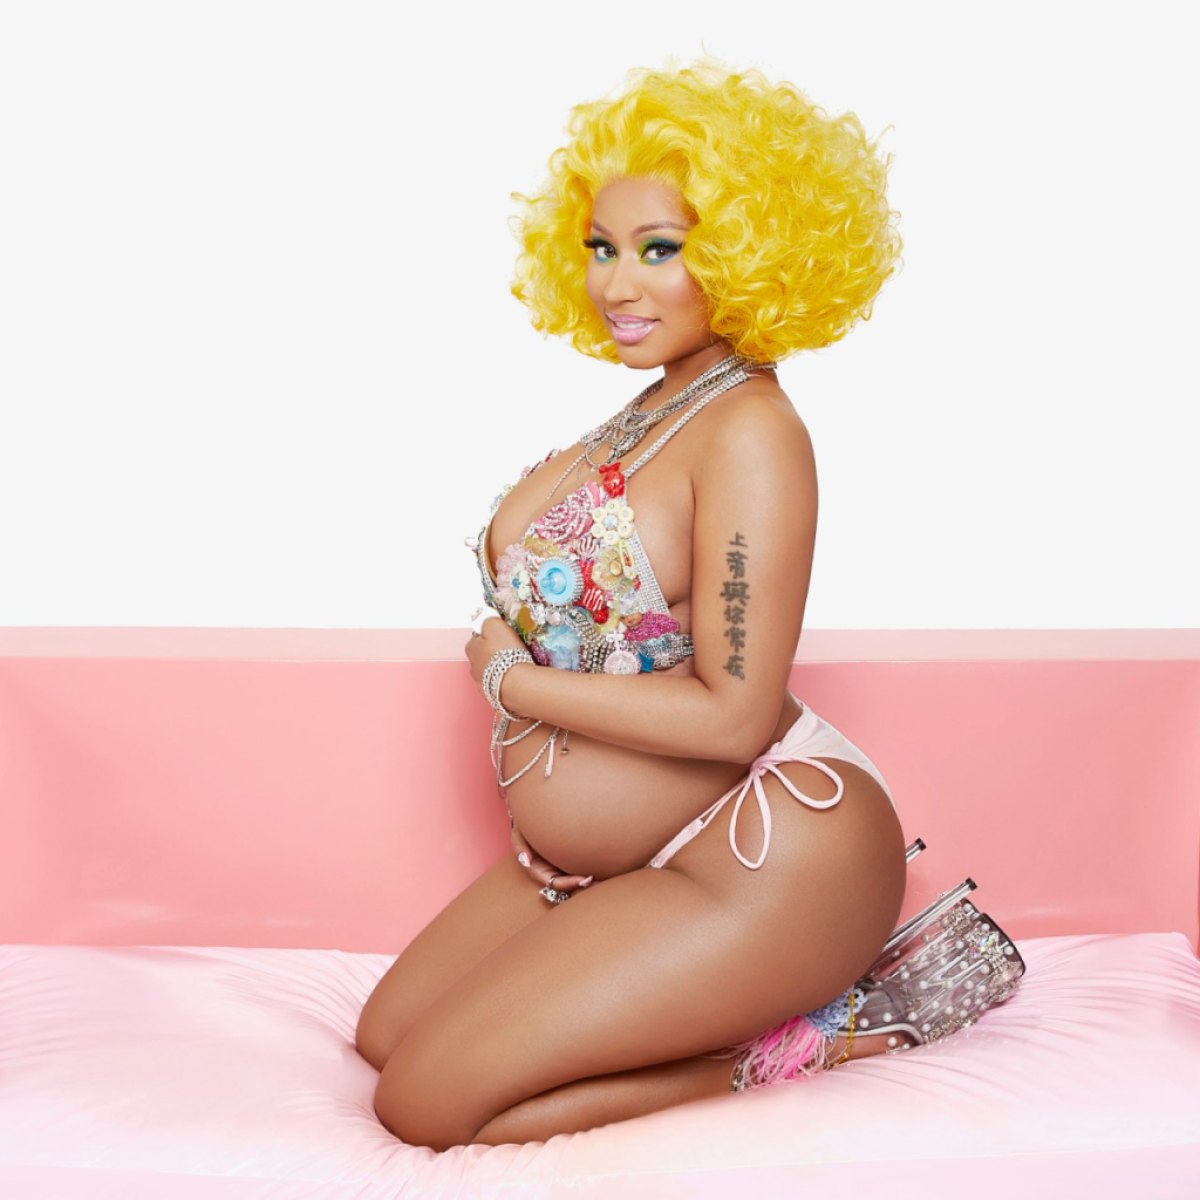 Nikki Minaj Porn - Nicki Minaj's Baby's Sex: Teases Boy or Girl With New Baby Clothes